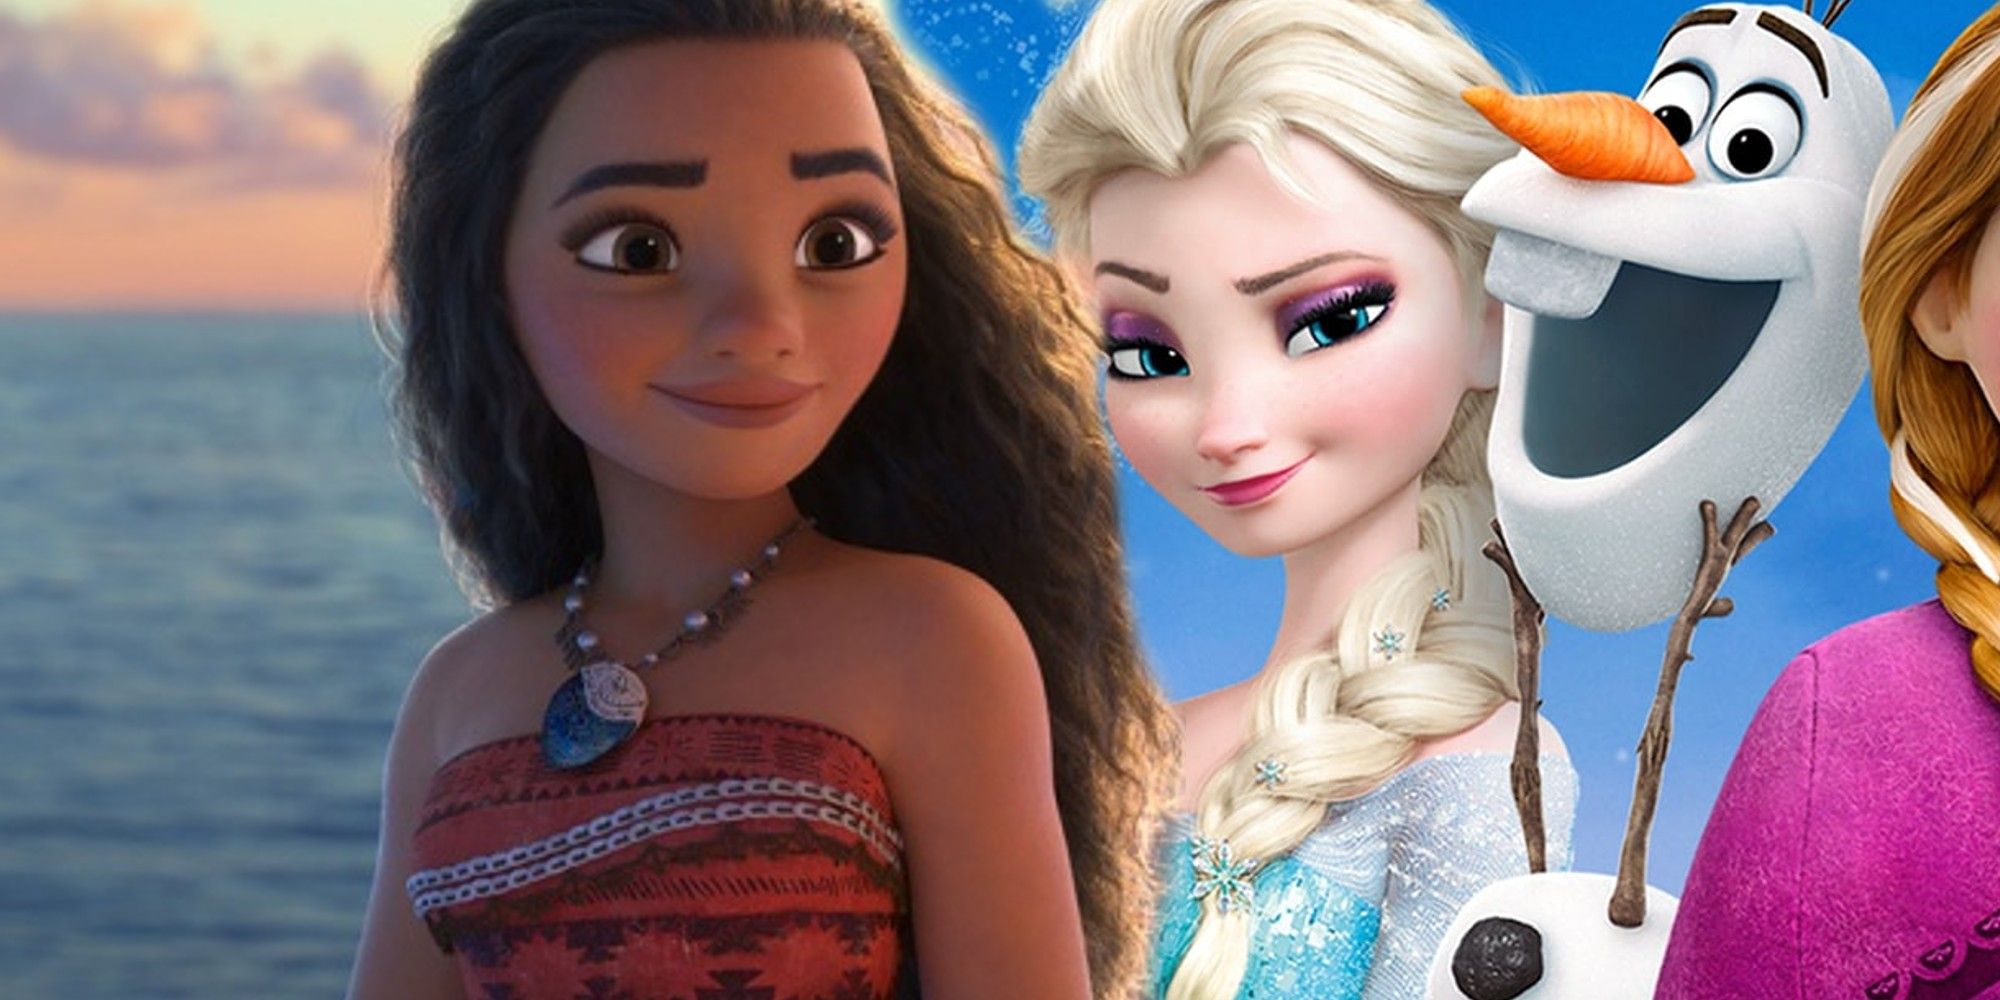 ¿Por qué se está rehaciendo Moana antes de Frozen?  Los fanáticos de Disney tienen algunas teorías